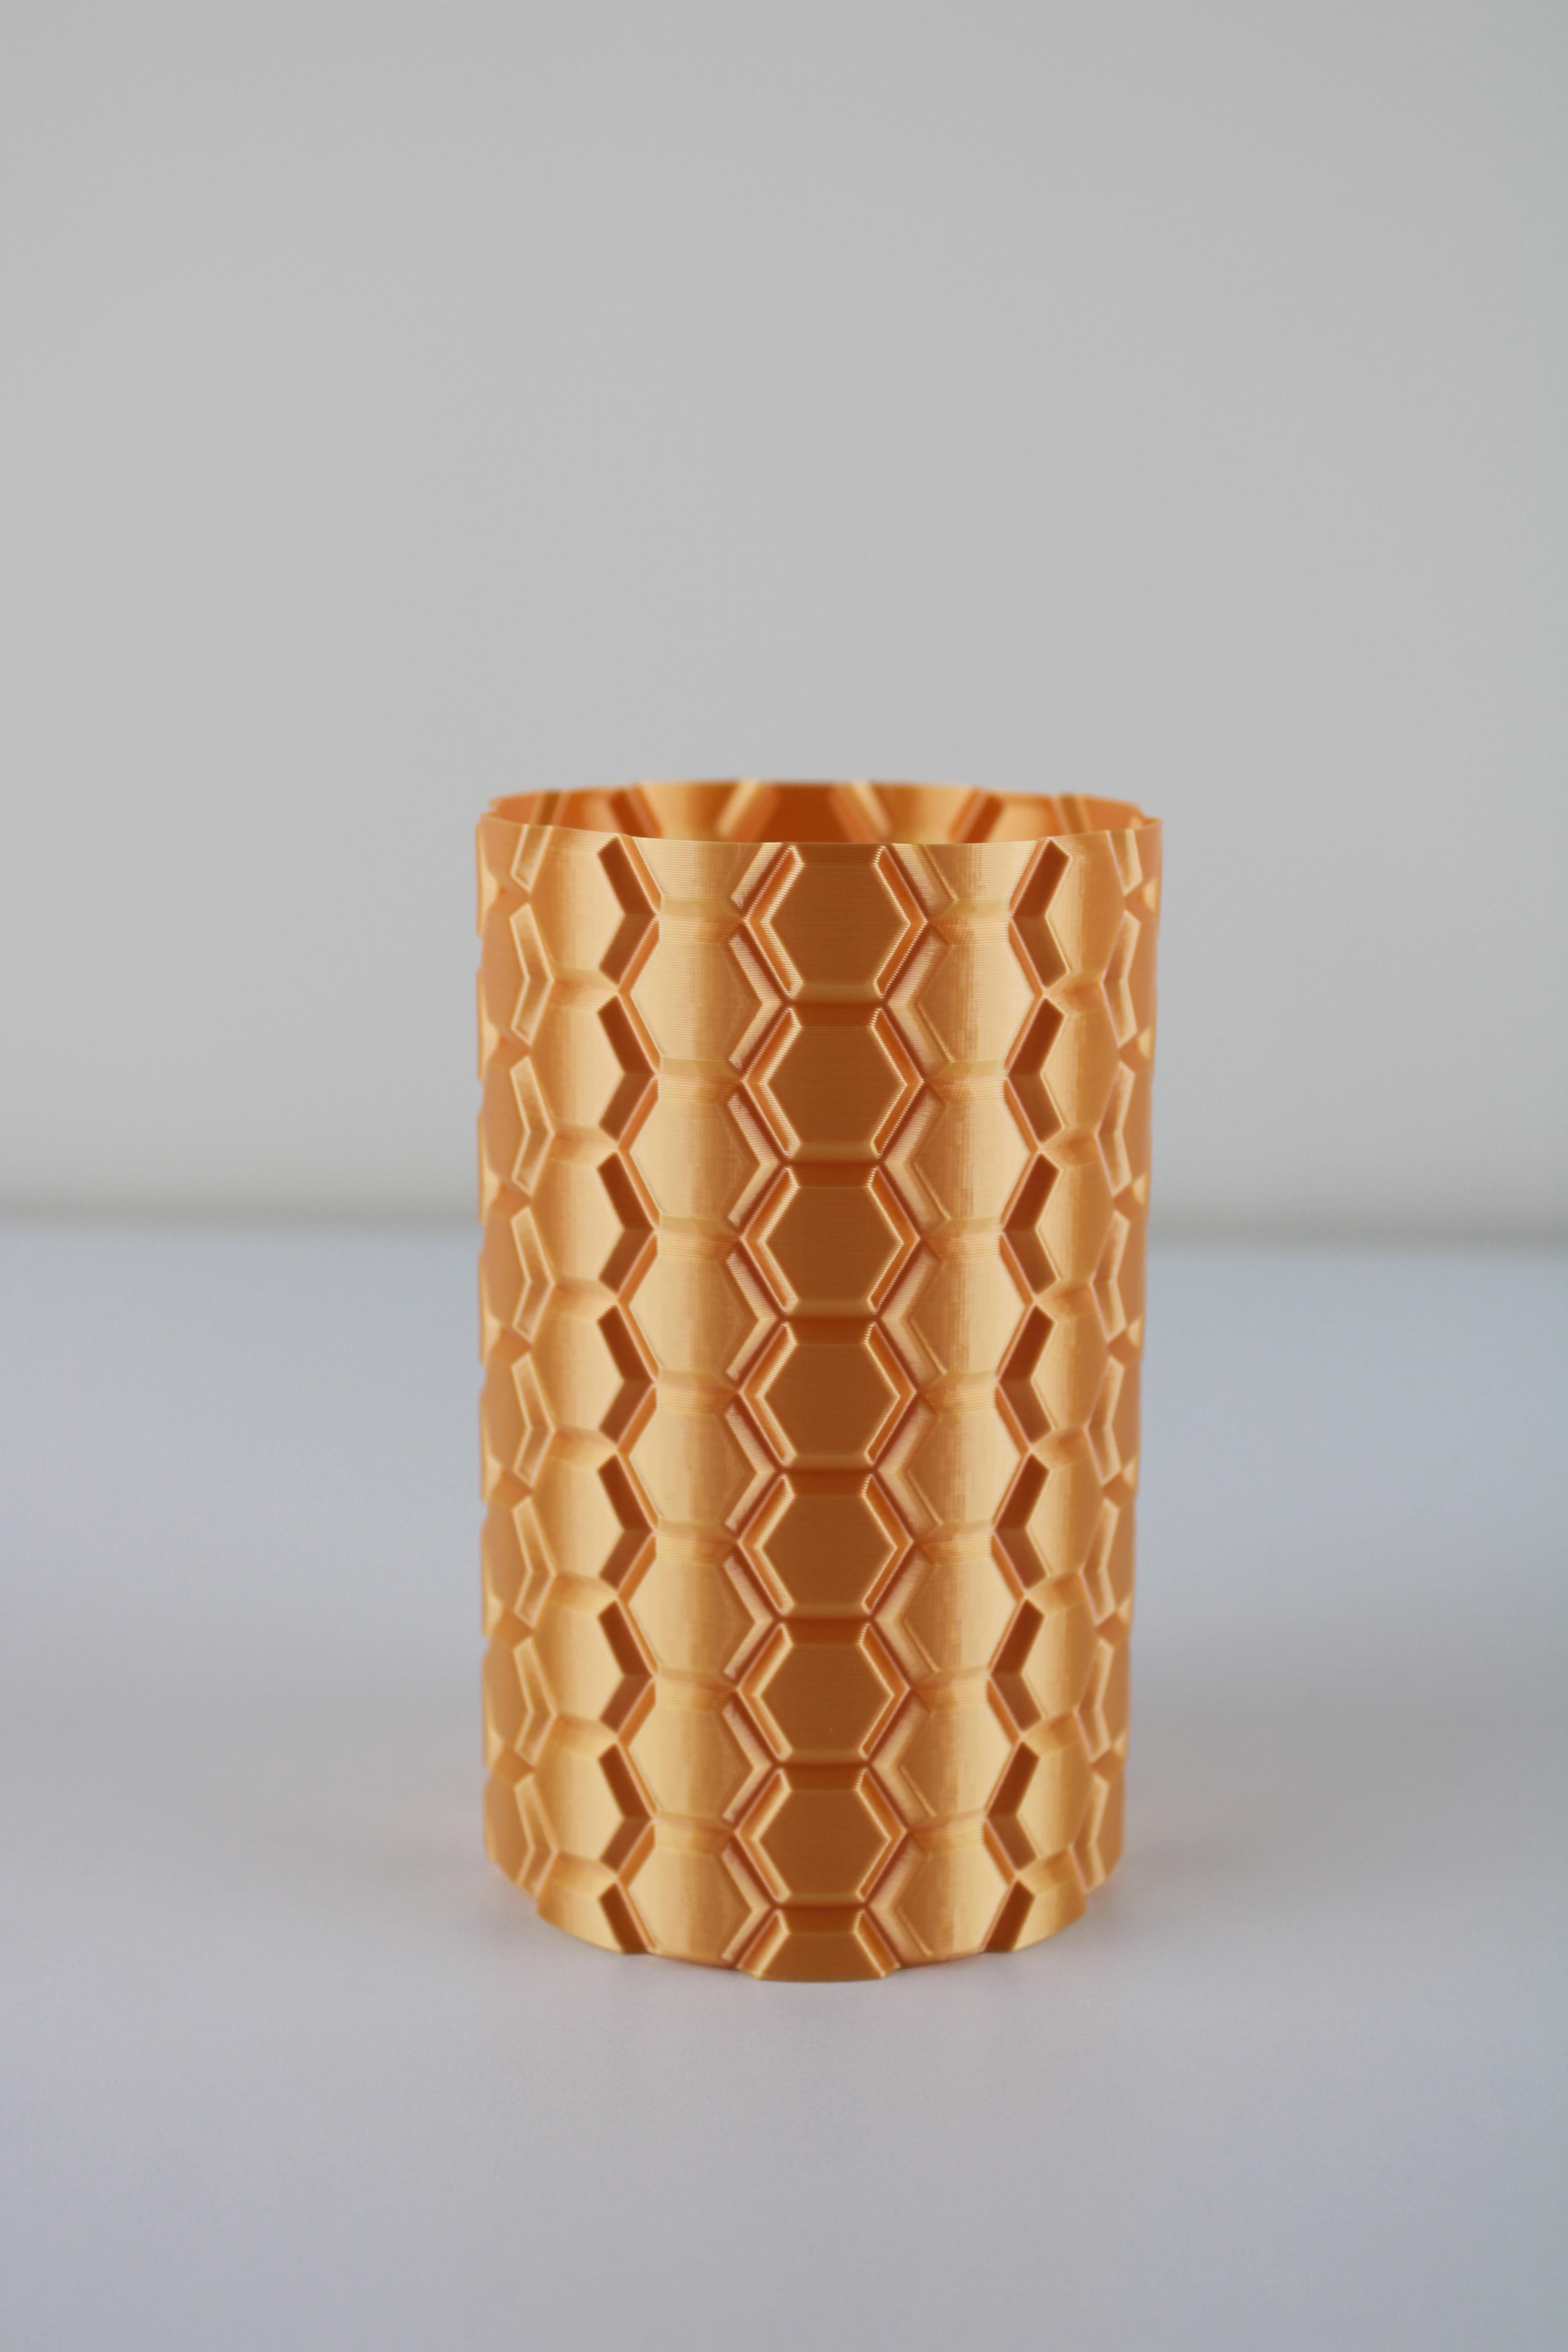 Honeycomb Vase (vase mode) 3d model